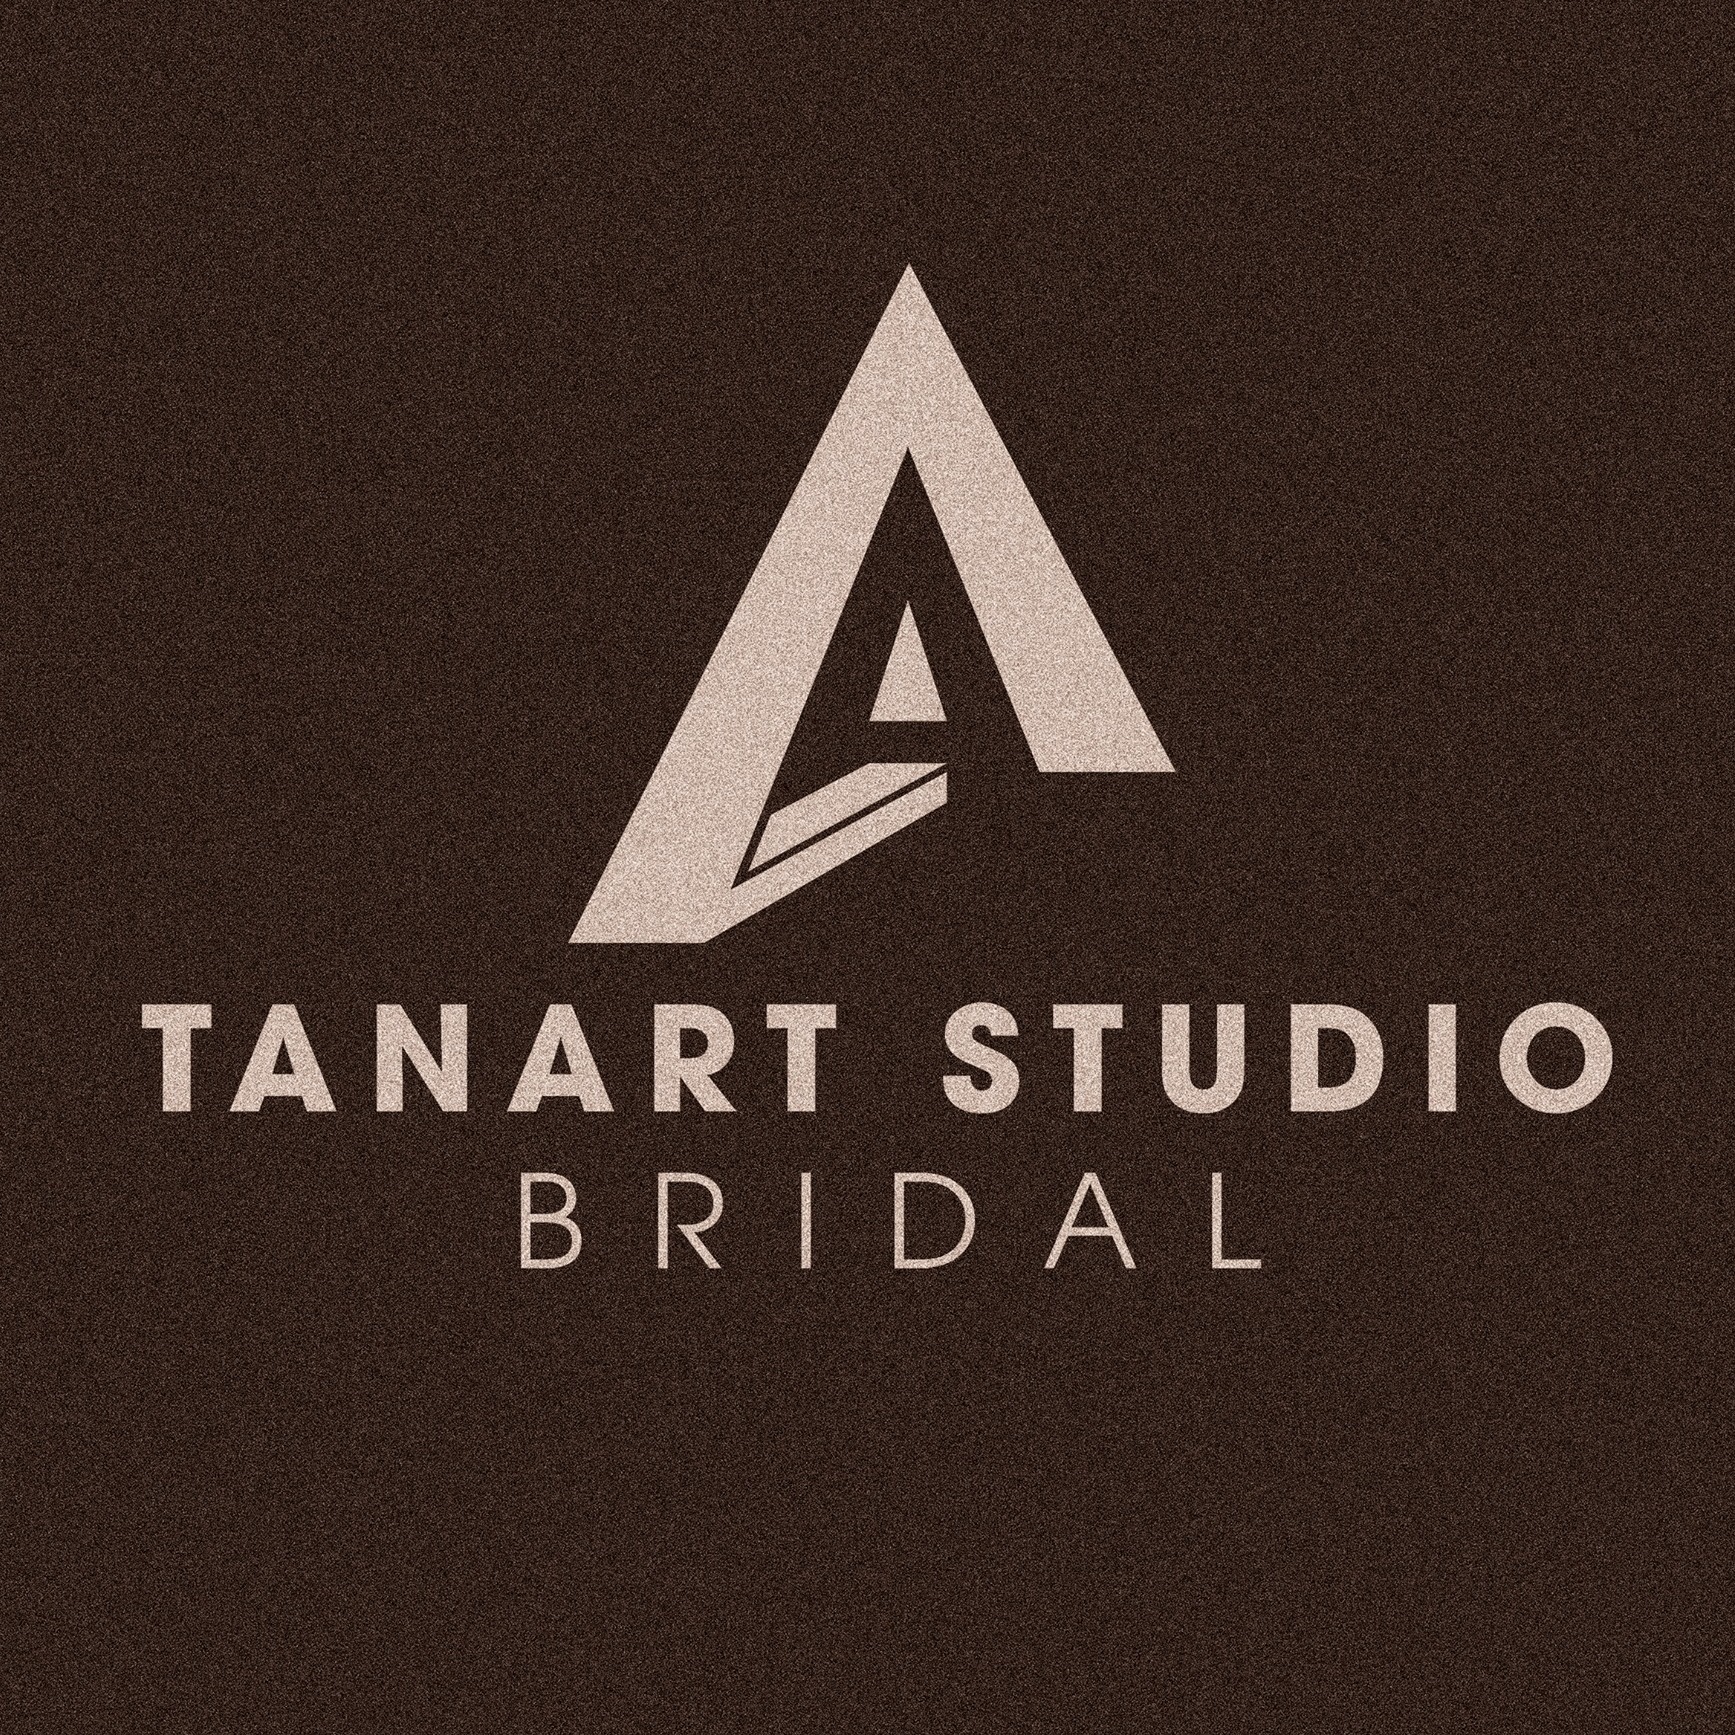 TanArt Studio